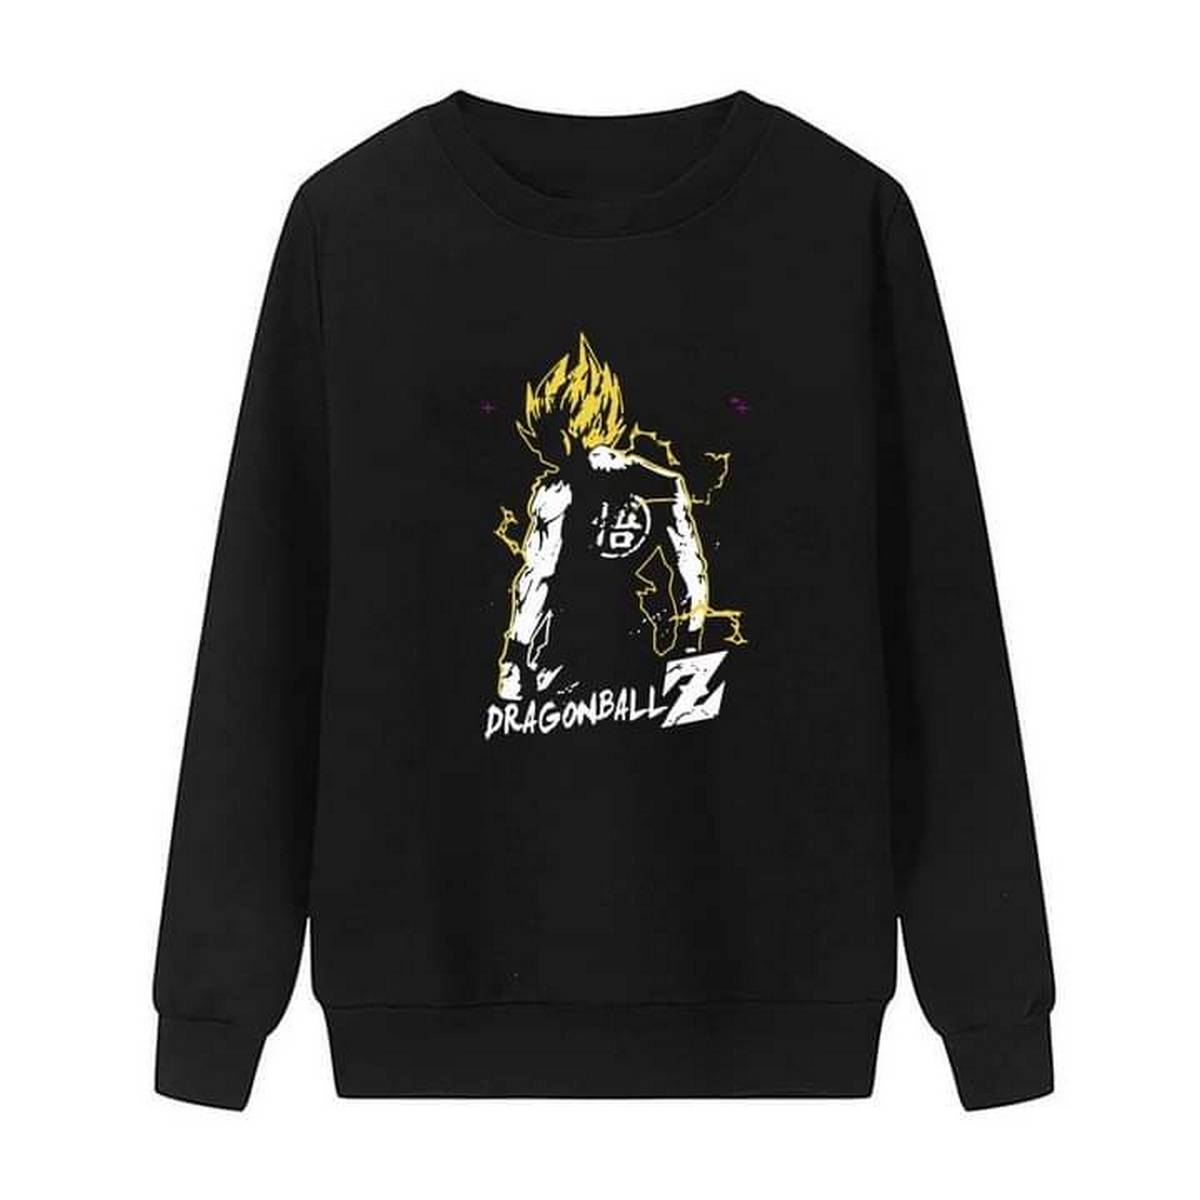 Black Dragon Ball Z Printed Sweatshirt For Boys